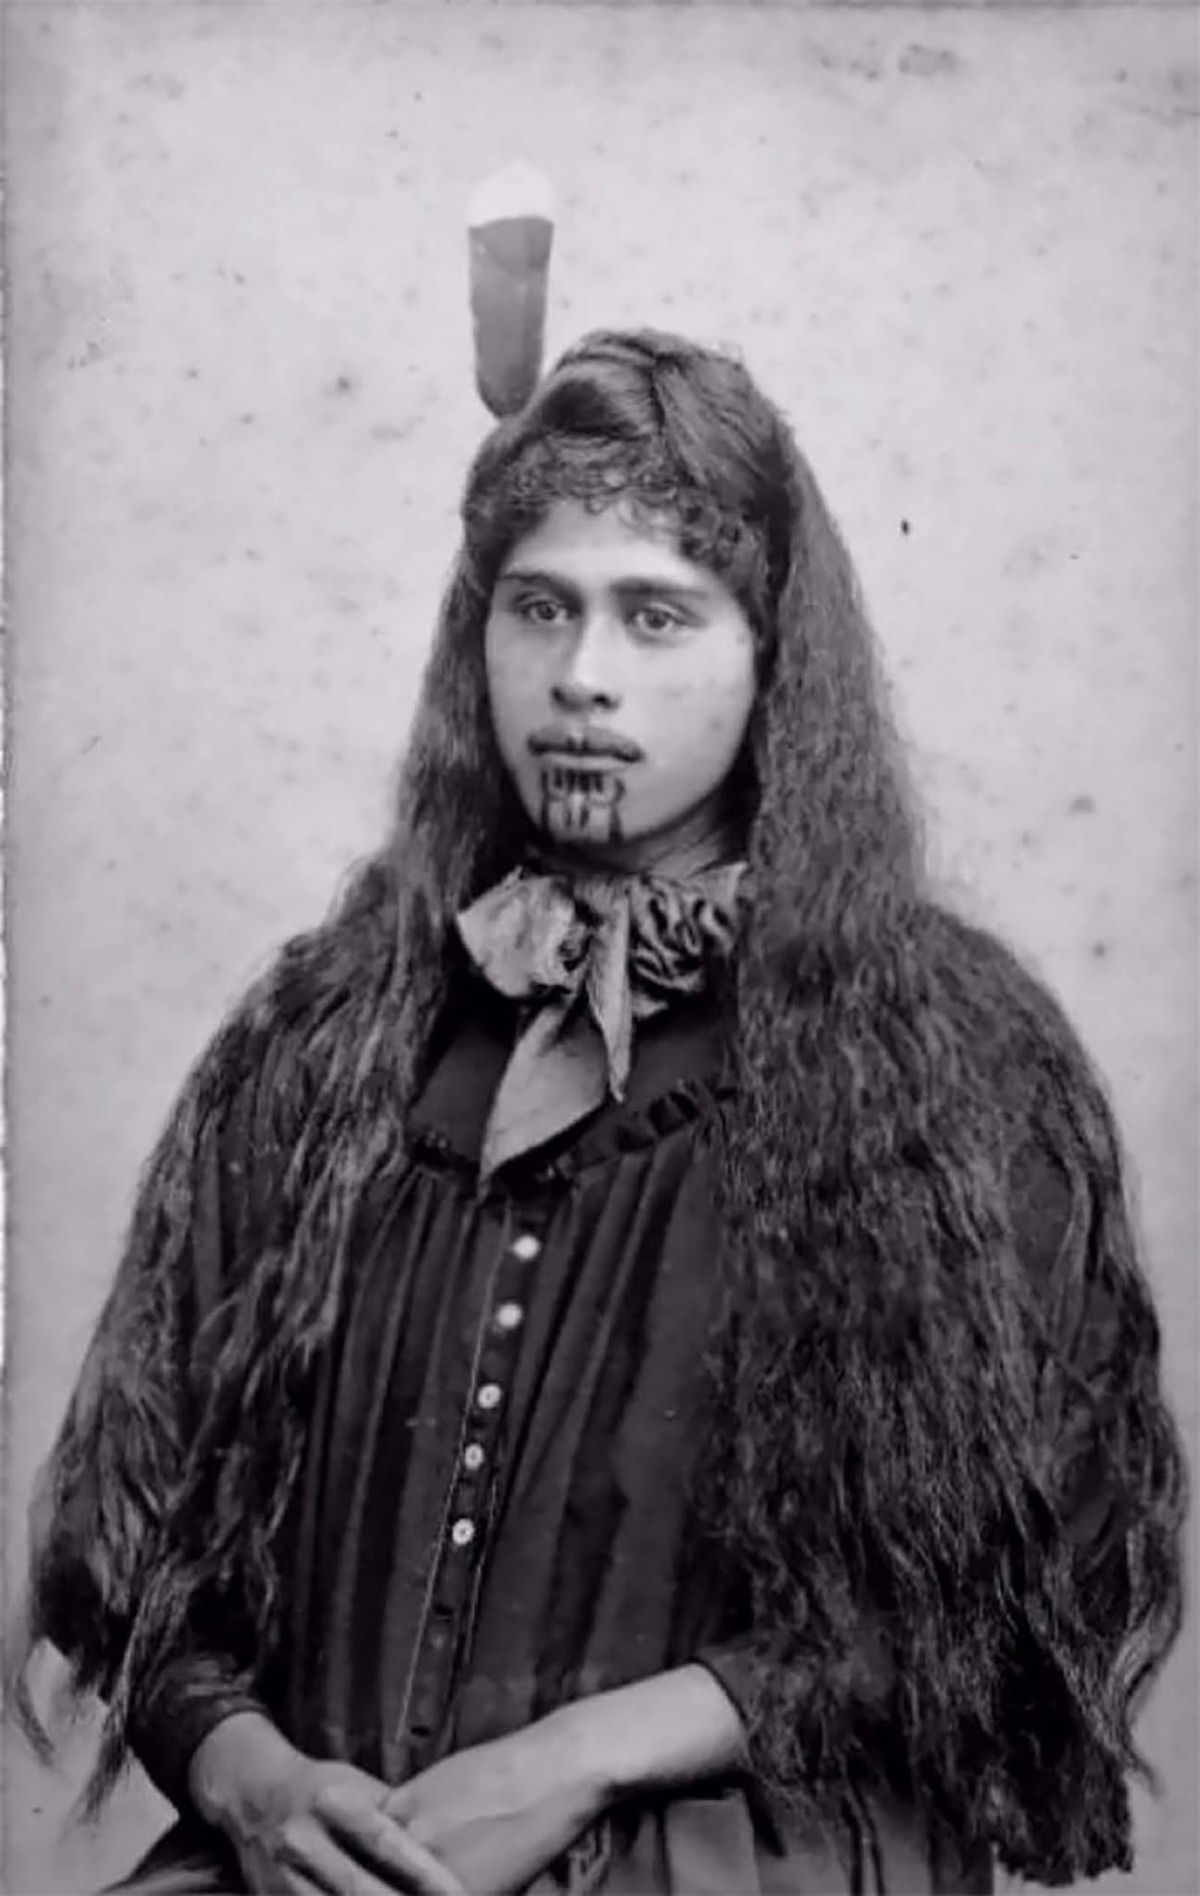 Antigas fotos de Maoris antes das tatuagens tā moko serem proibidas pelos britânicos 25